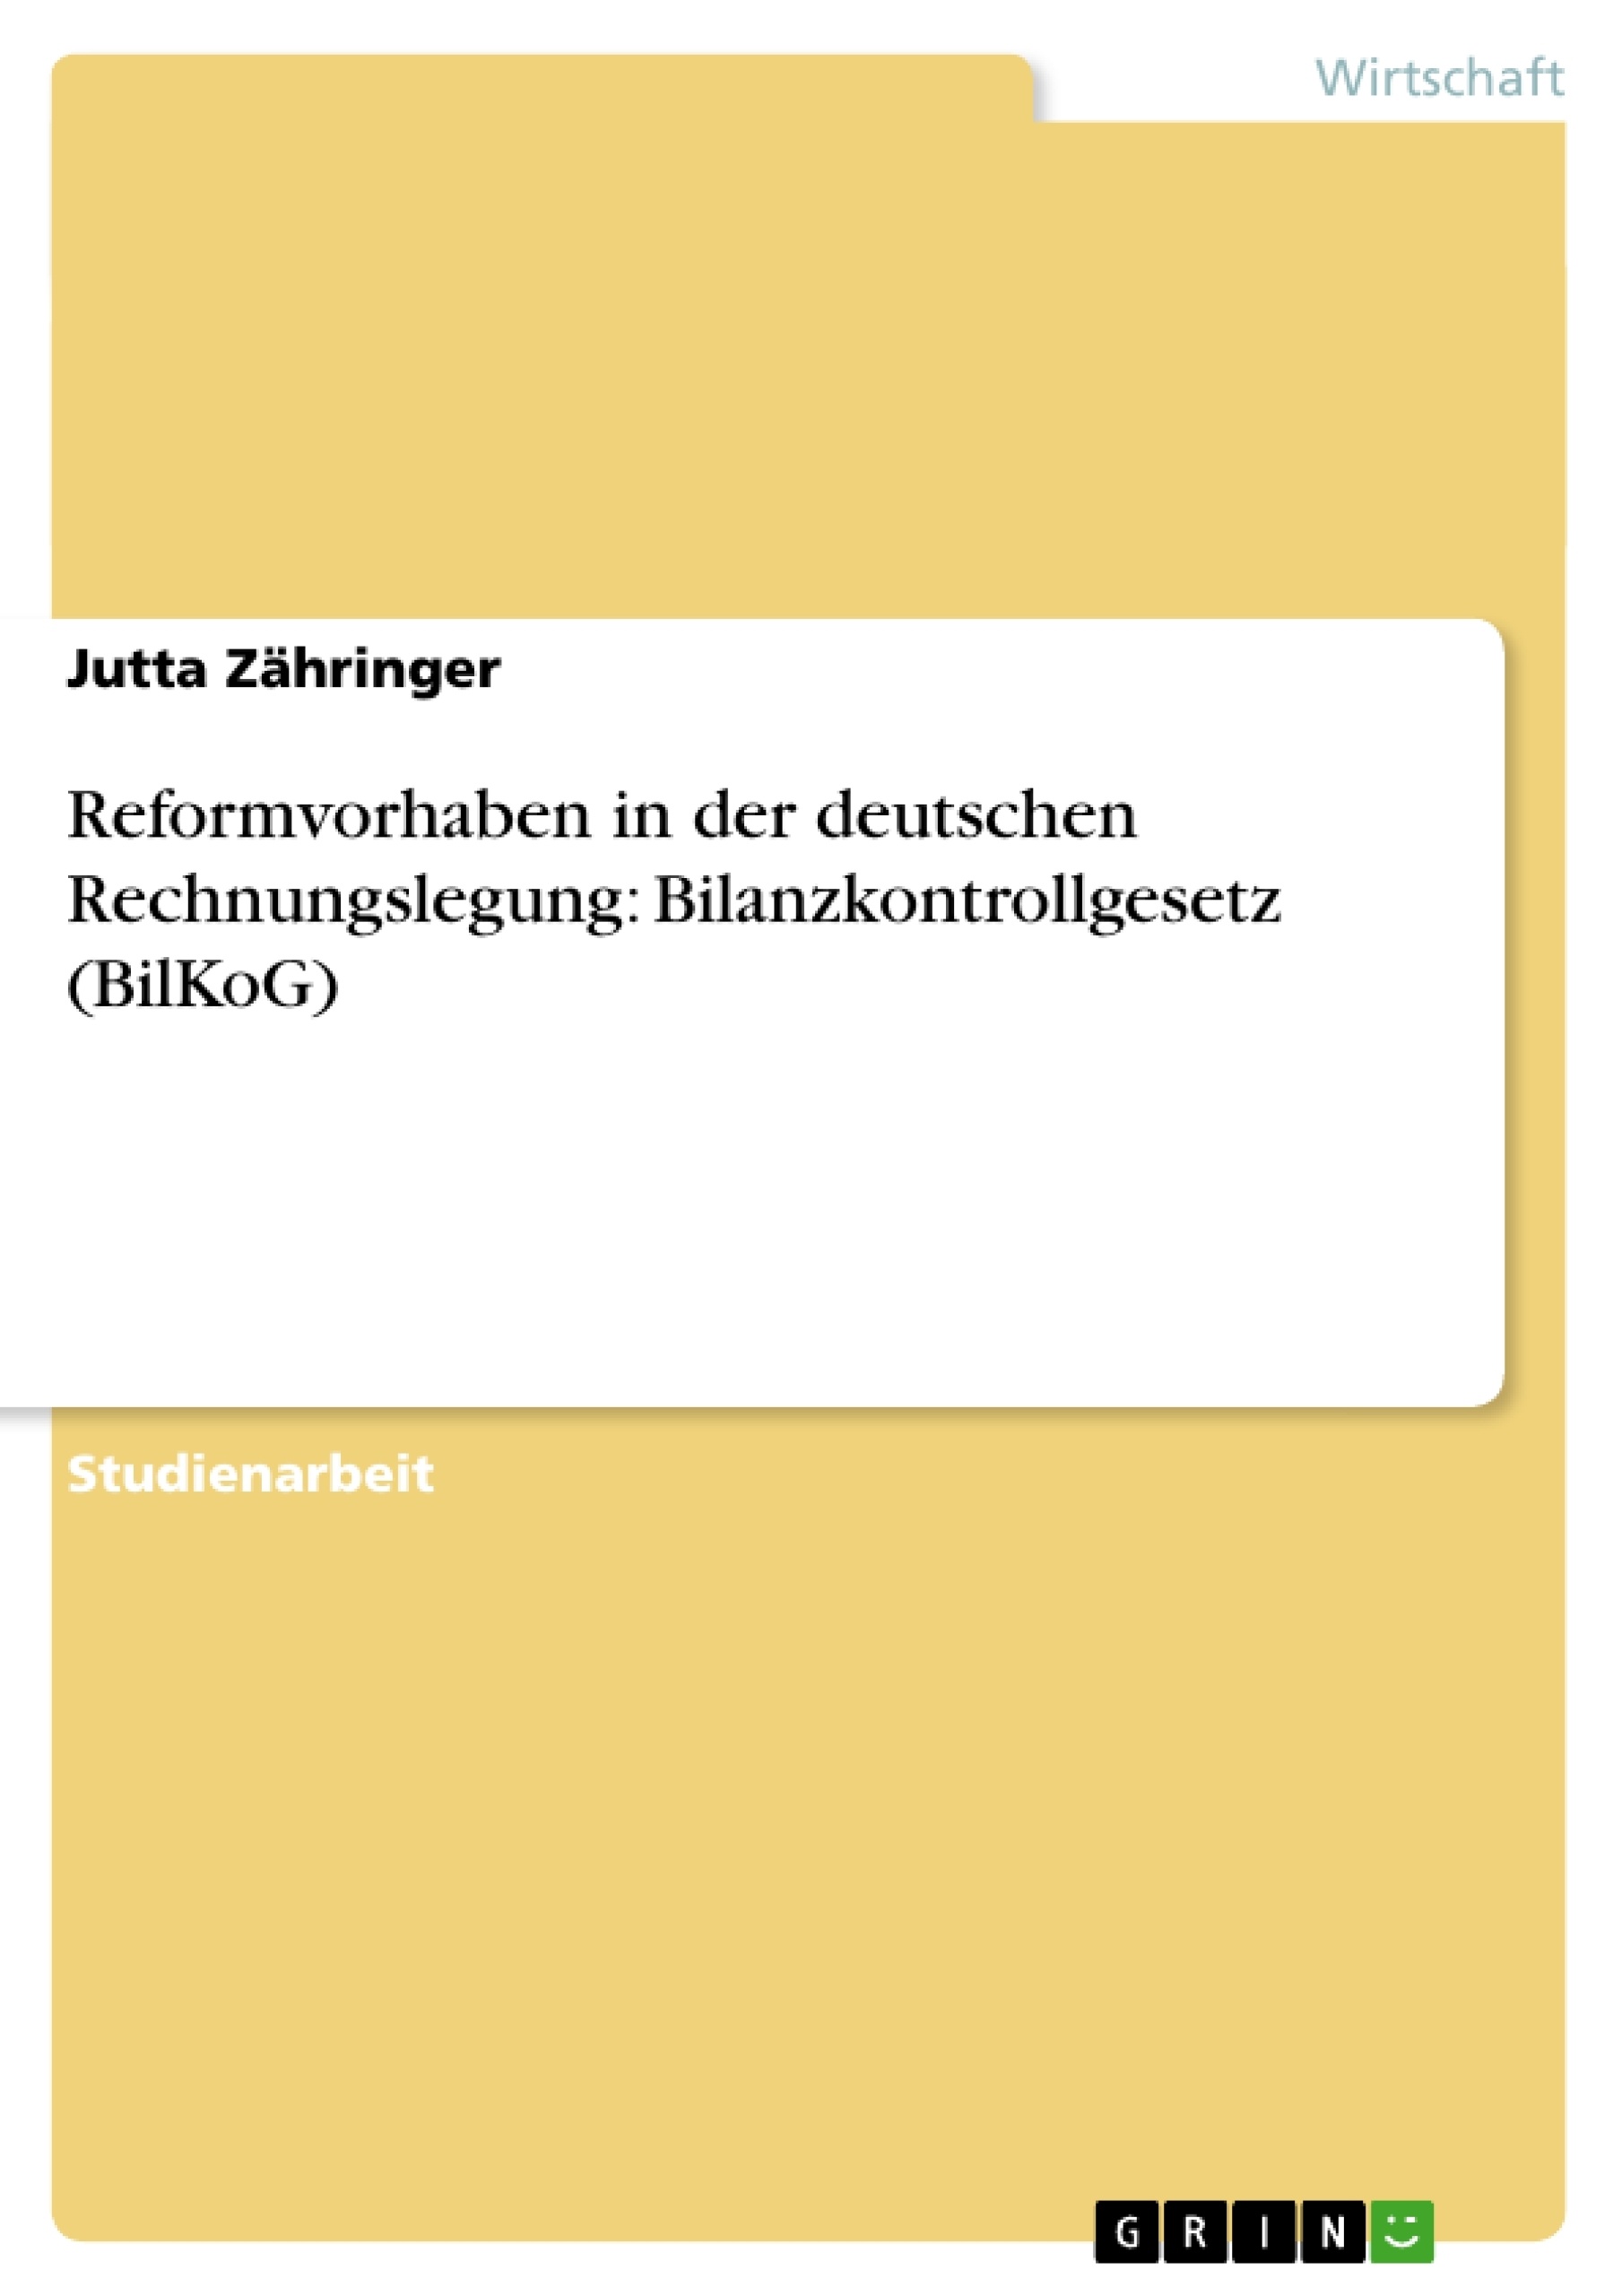 Titre: Reformvorhaben in der deutschen Rechnungslegung: Bilanzkontrollgesetz (BilKoG)